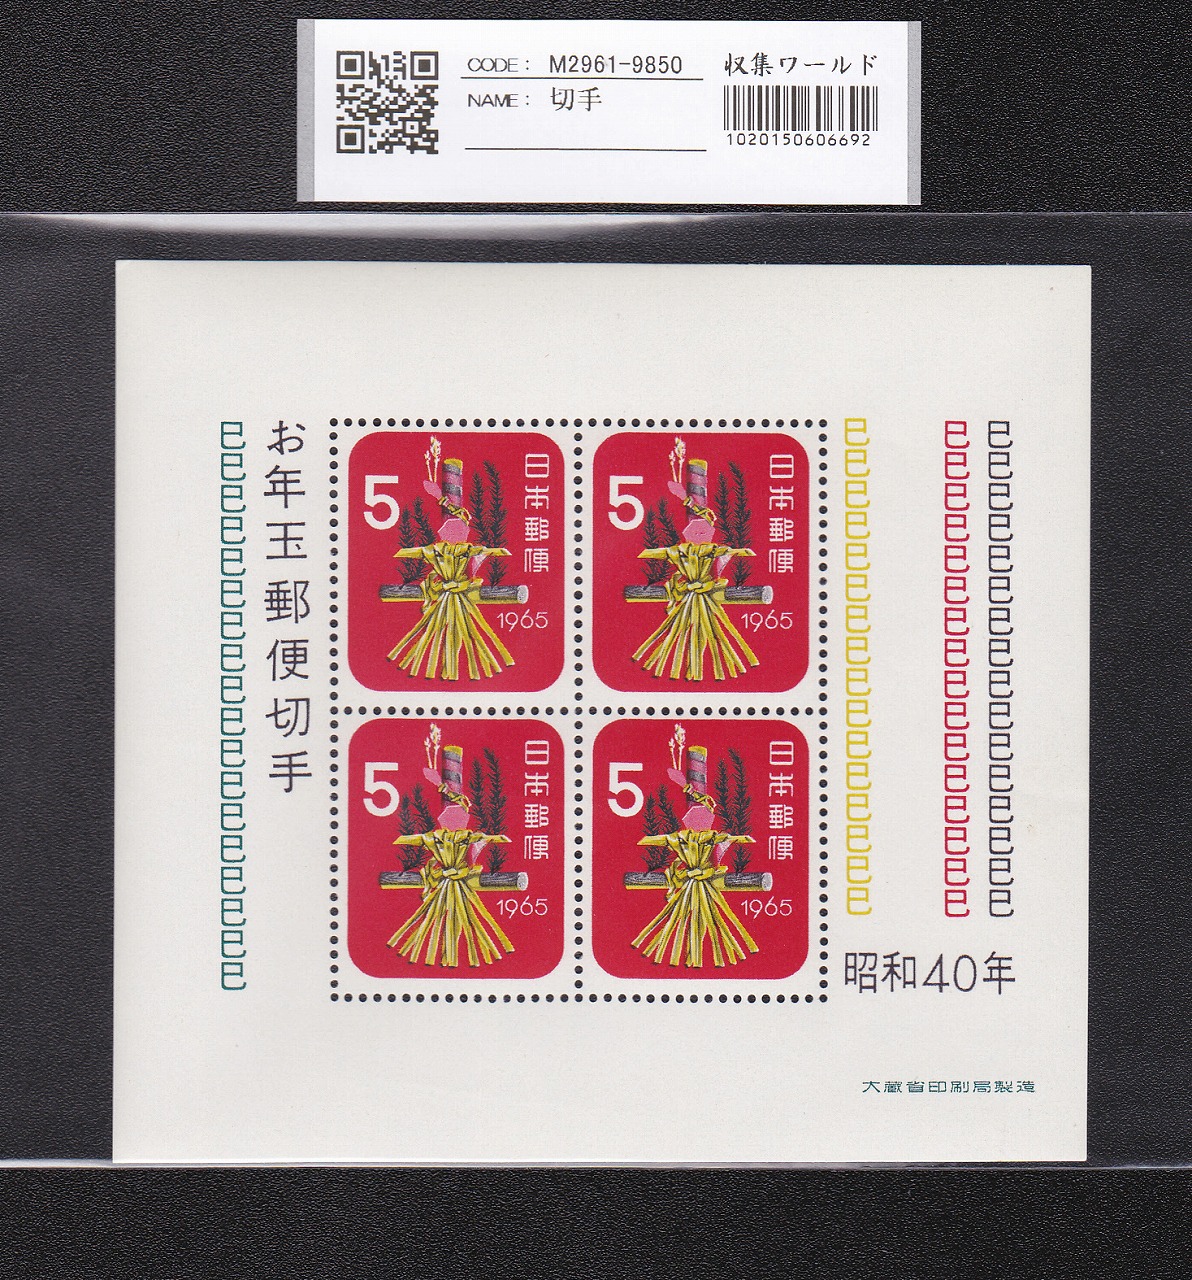 お年玉 郵便切手 昭和40年(191965)大蔵省発行 5円×4枚小型シート 未使用 収集ワールド